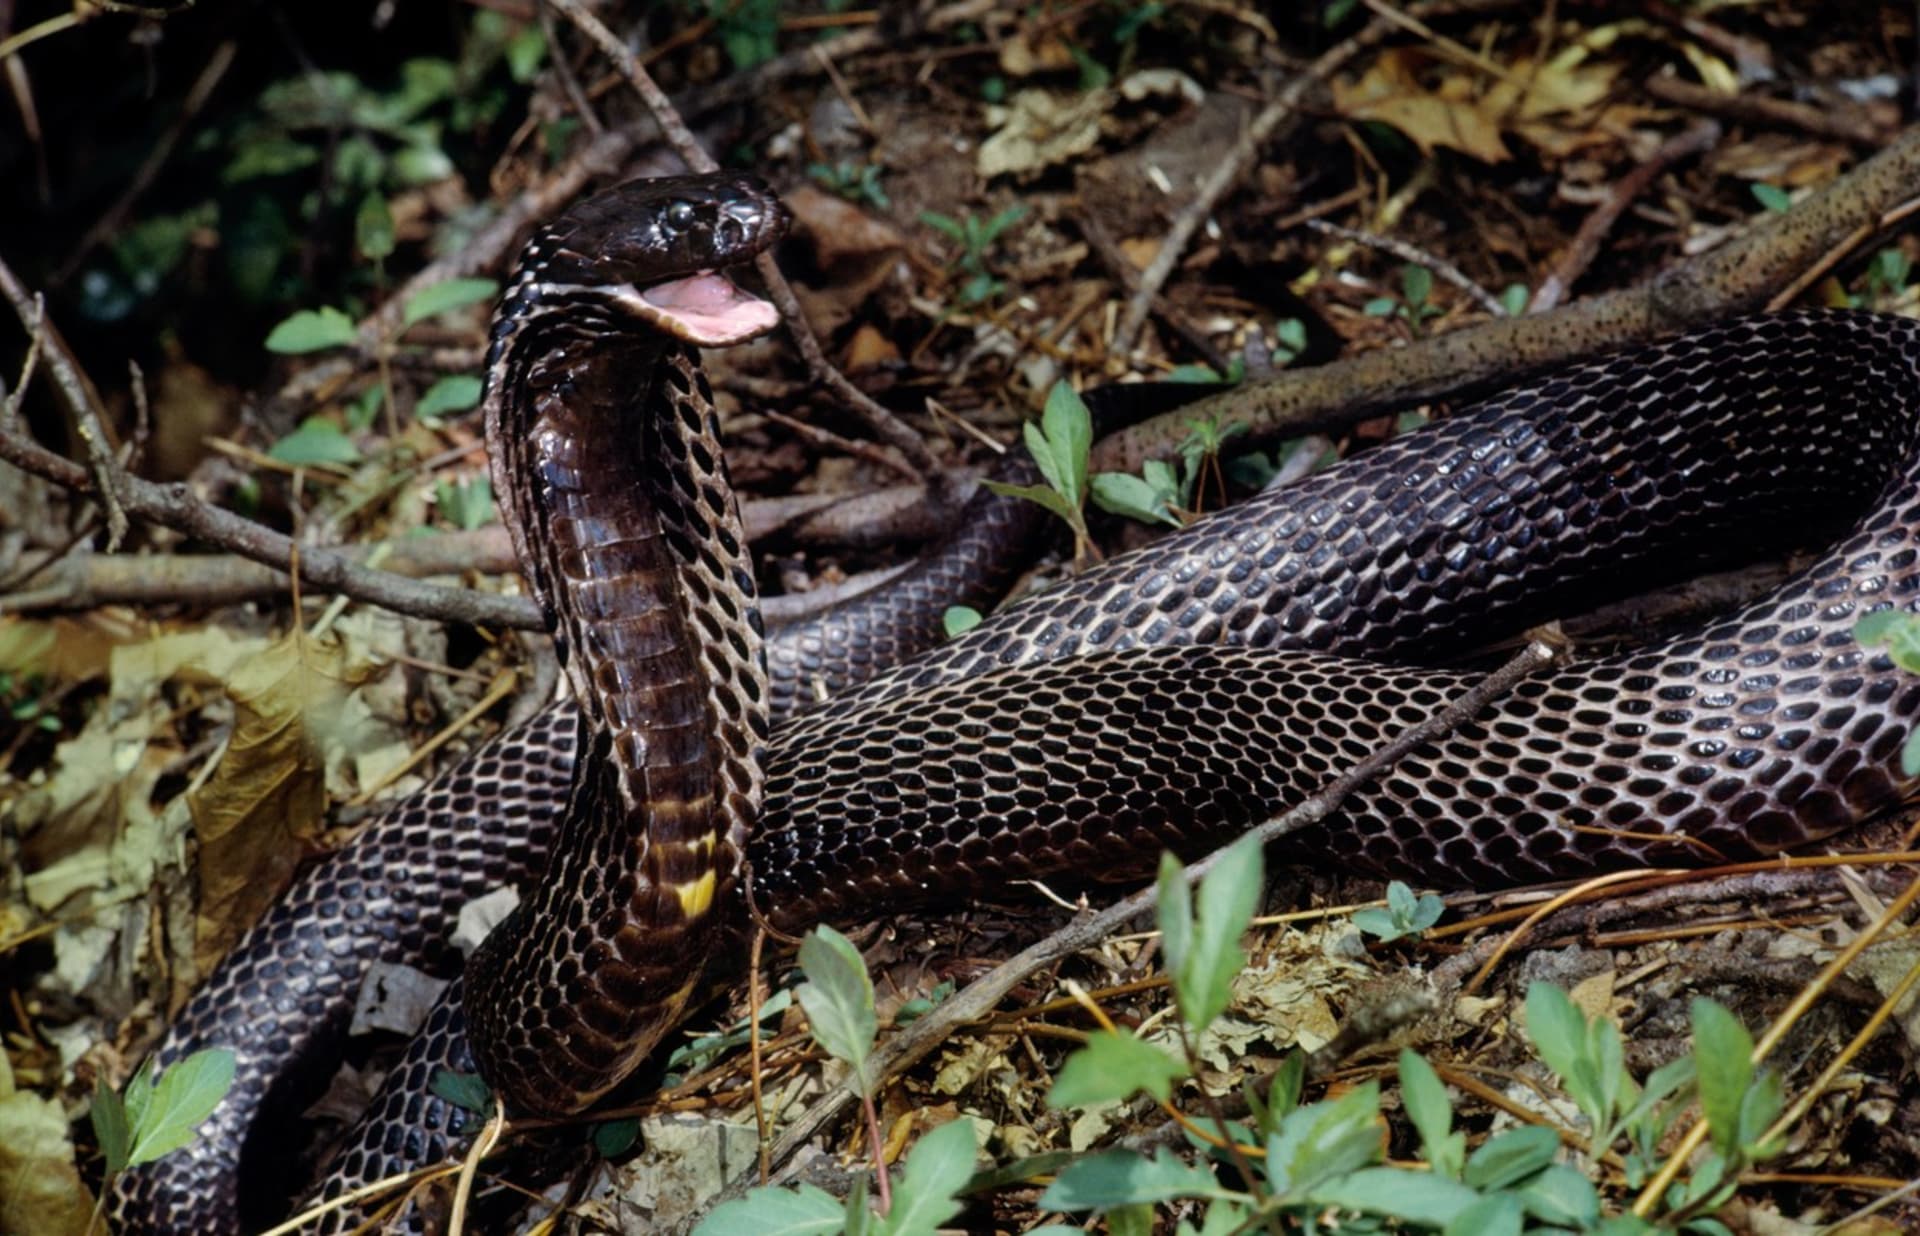 V případě nouze umí kobra obojková předstírat smrt